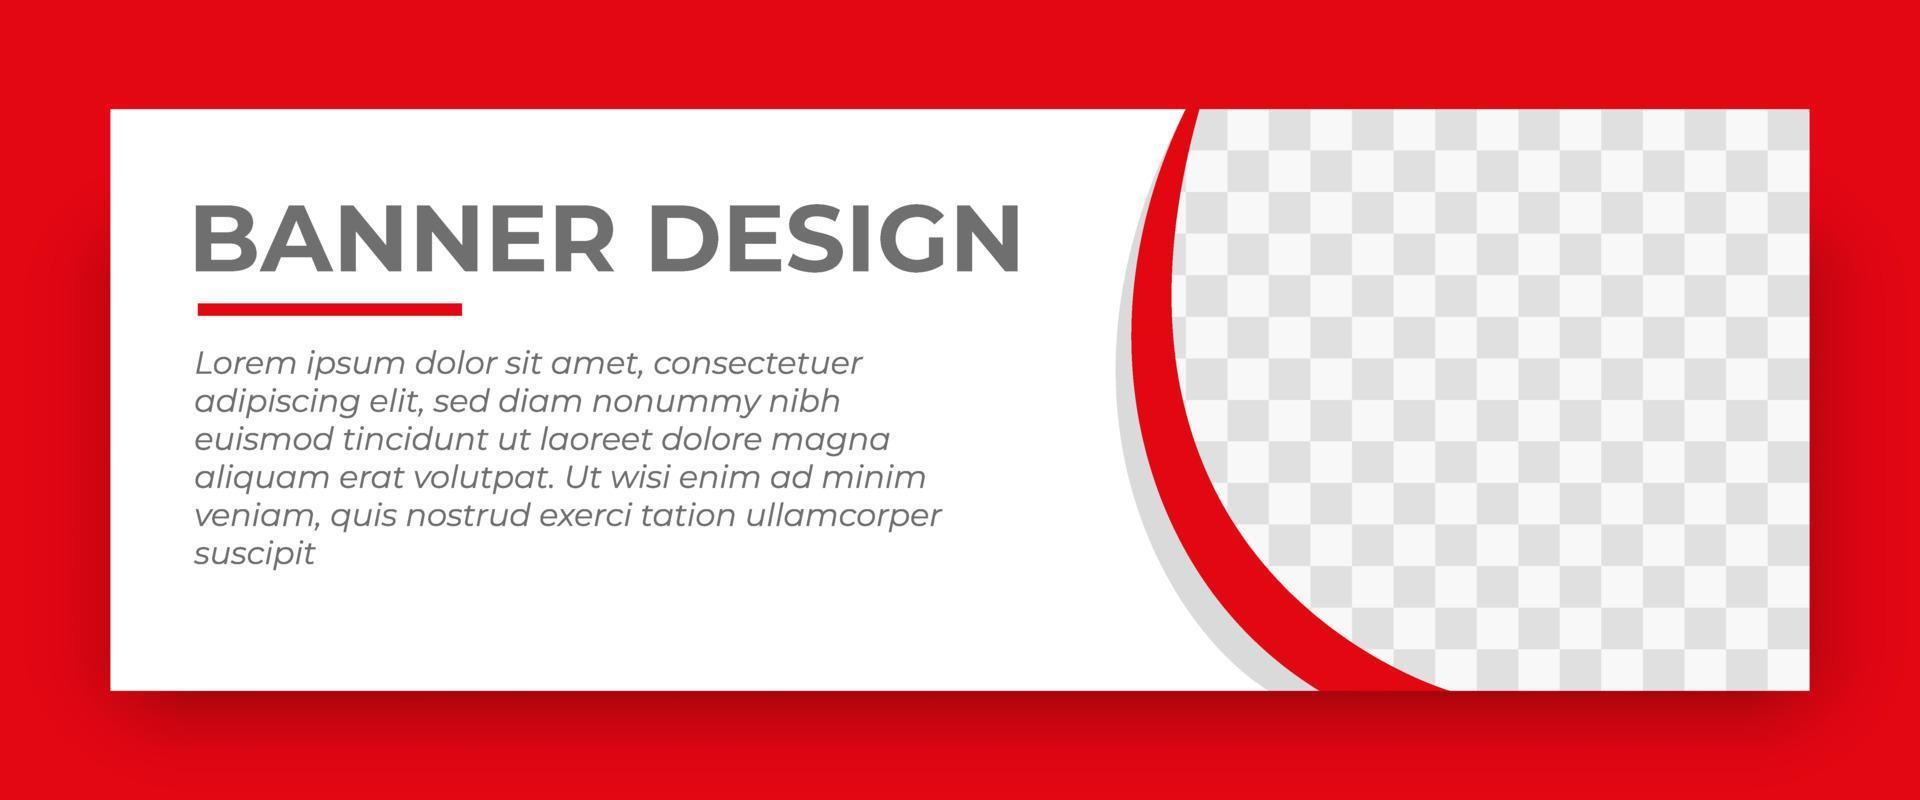 modello di banner web creativo. dimensioni standard con spazio per le foto. modelli di banner design con colore rosso. illustrazione vettoriale